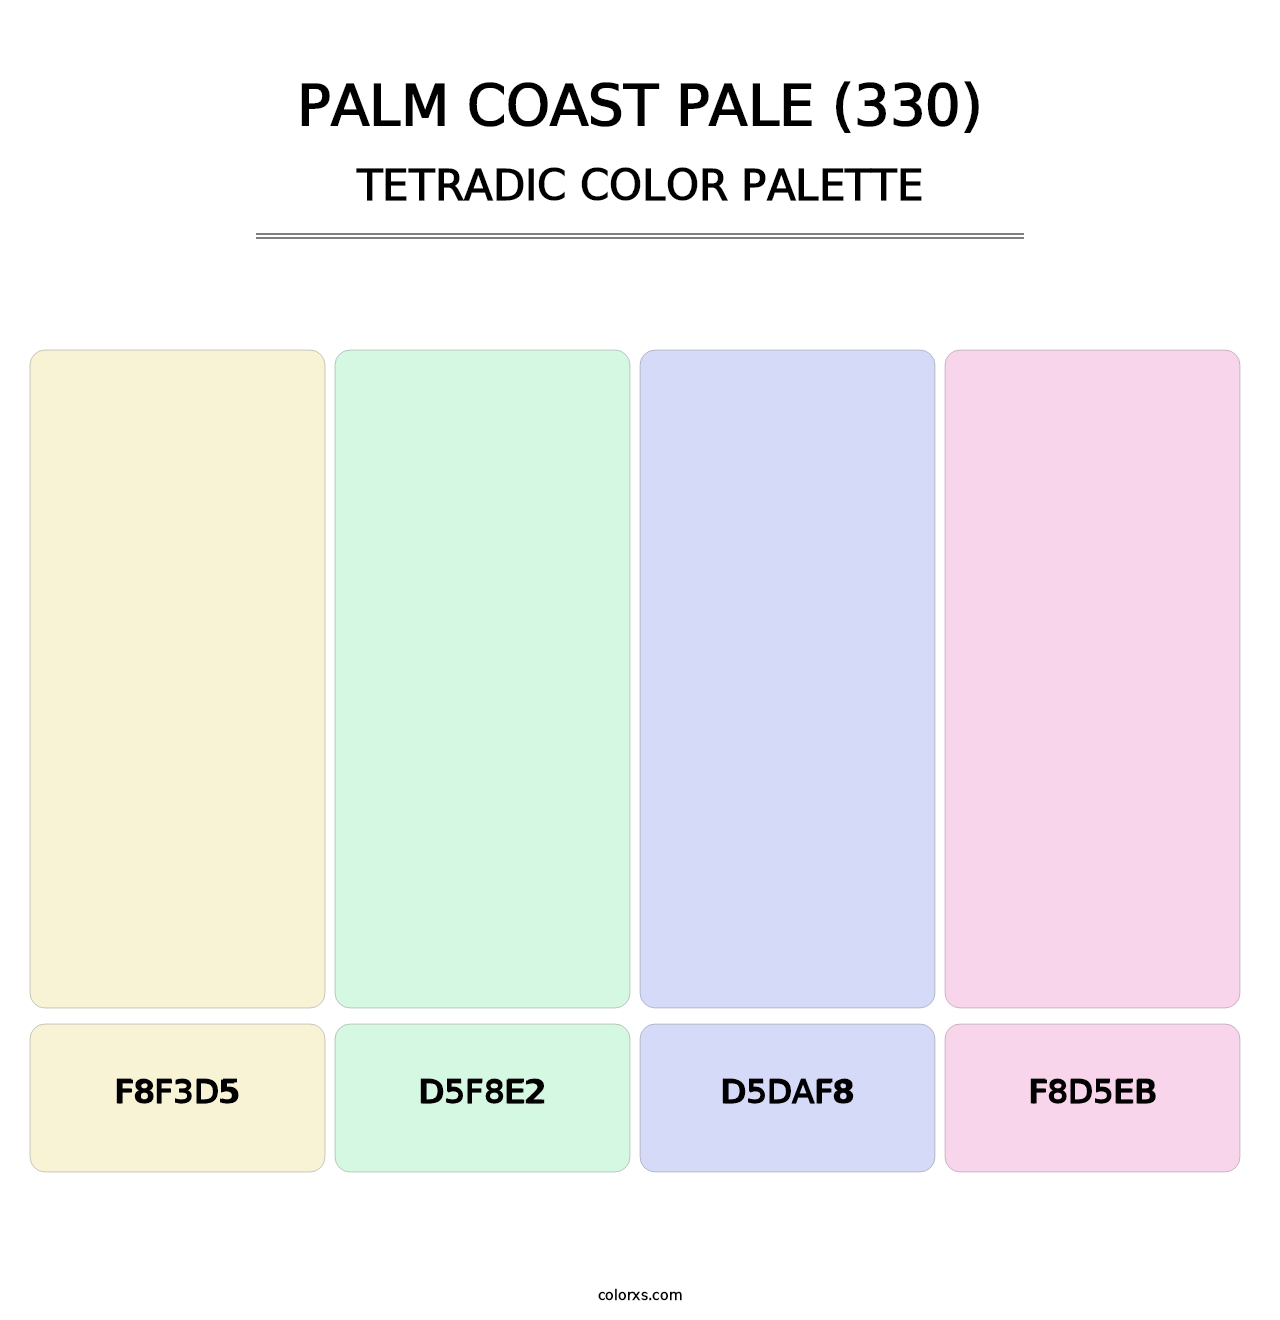 Palm Coast Pale (330) - Tetradic Color Palette